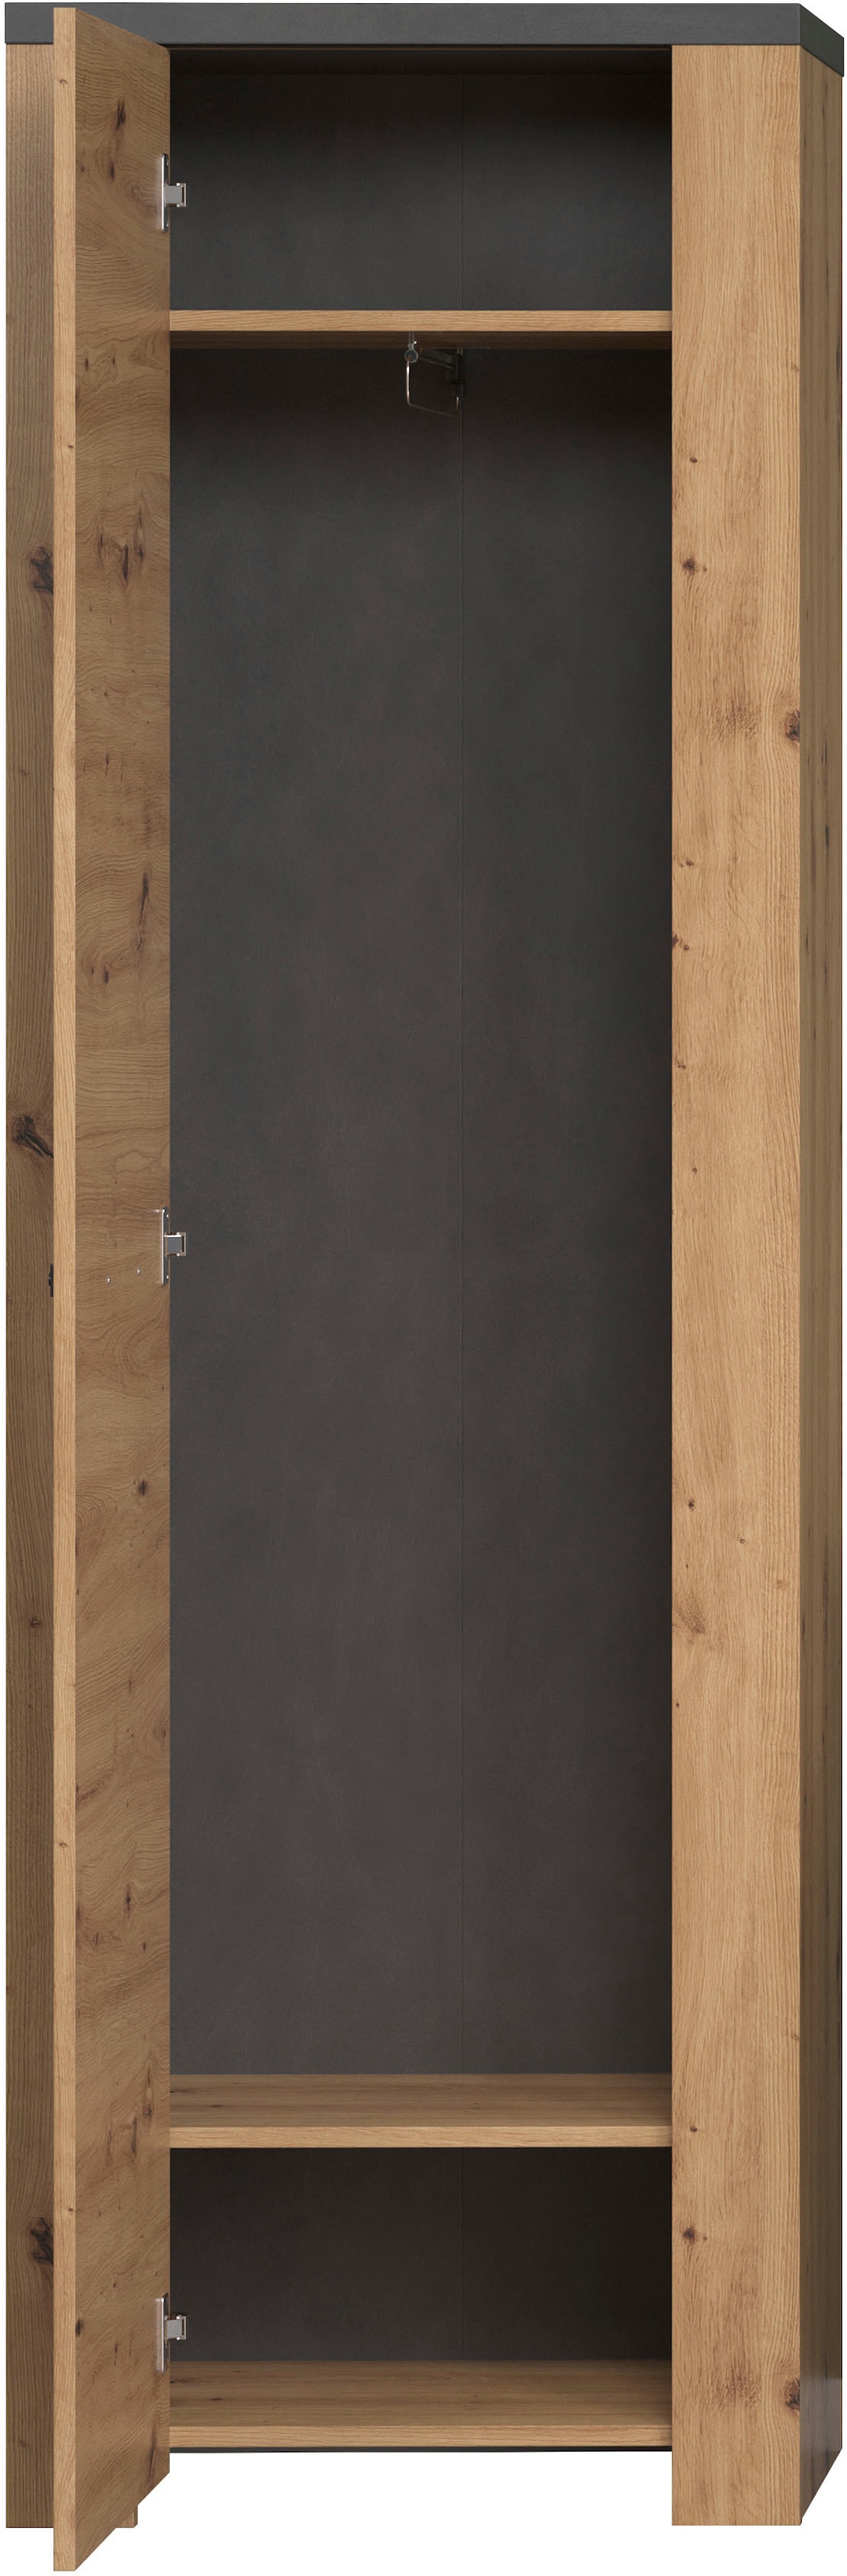 Home affaire Hochschrank »Ambres«, (1 St.), matte Echtholzoptik, ca. 62 cm breit, ausziehbare Kleiderstange